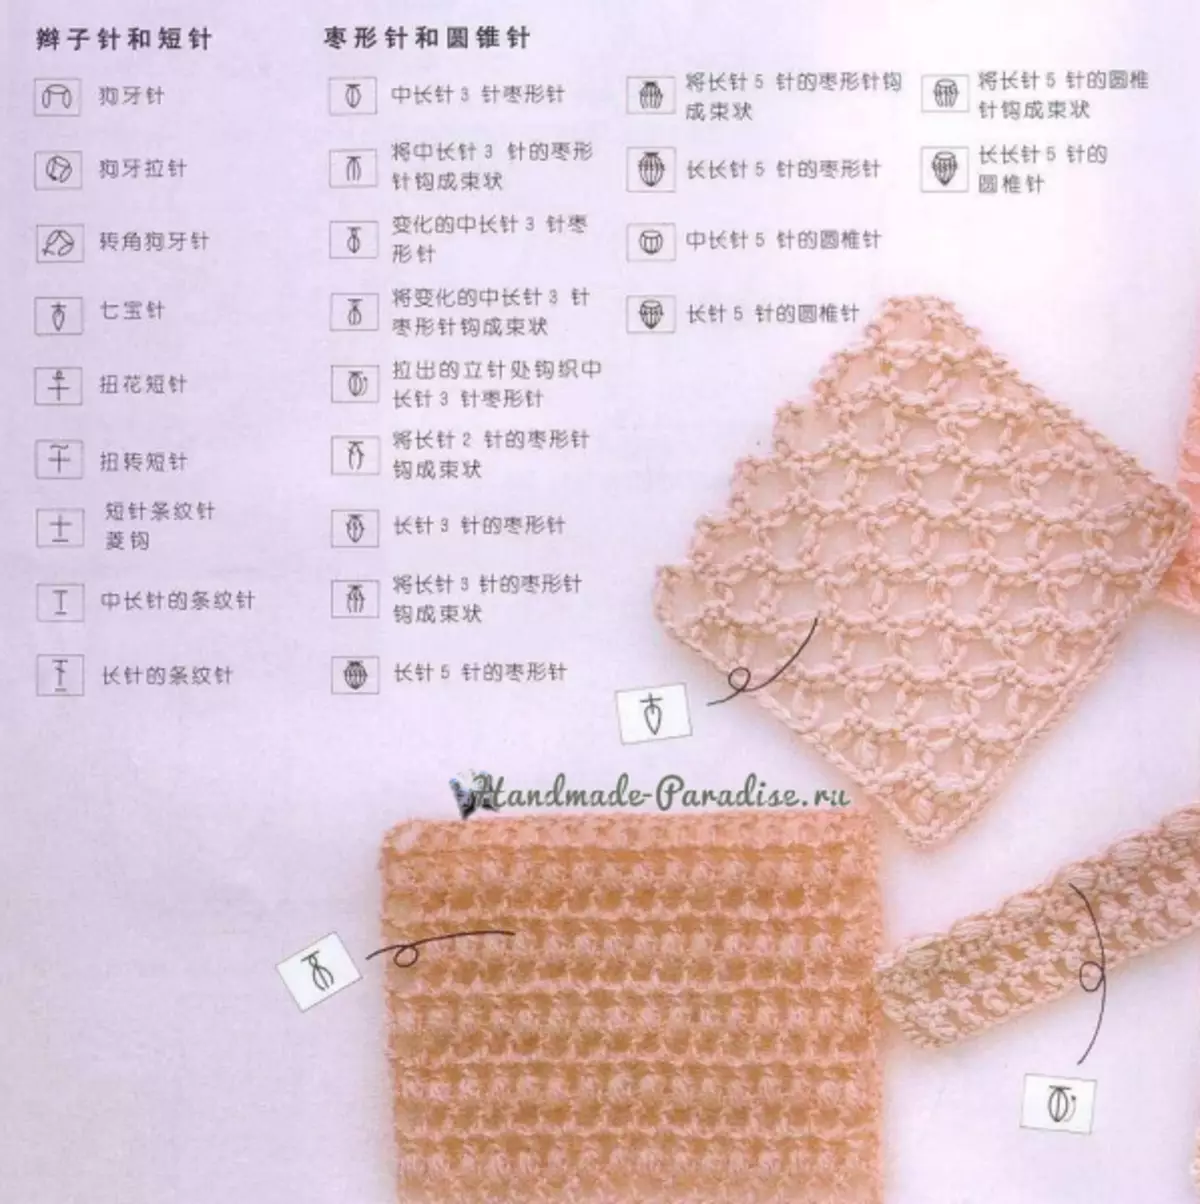 ວິທີການ Crochet ໃນໂຄງການຈີນ